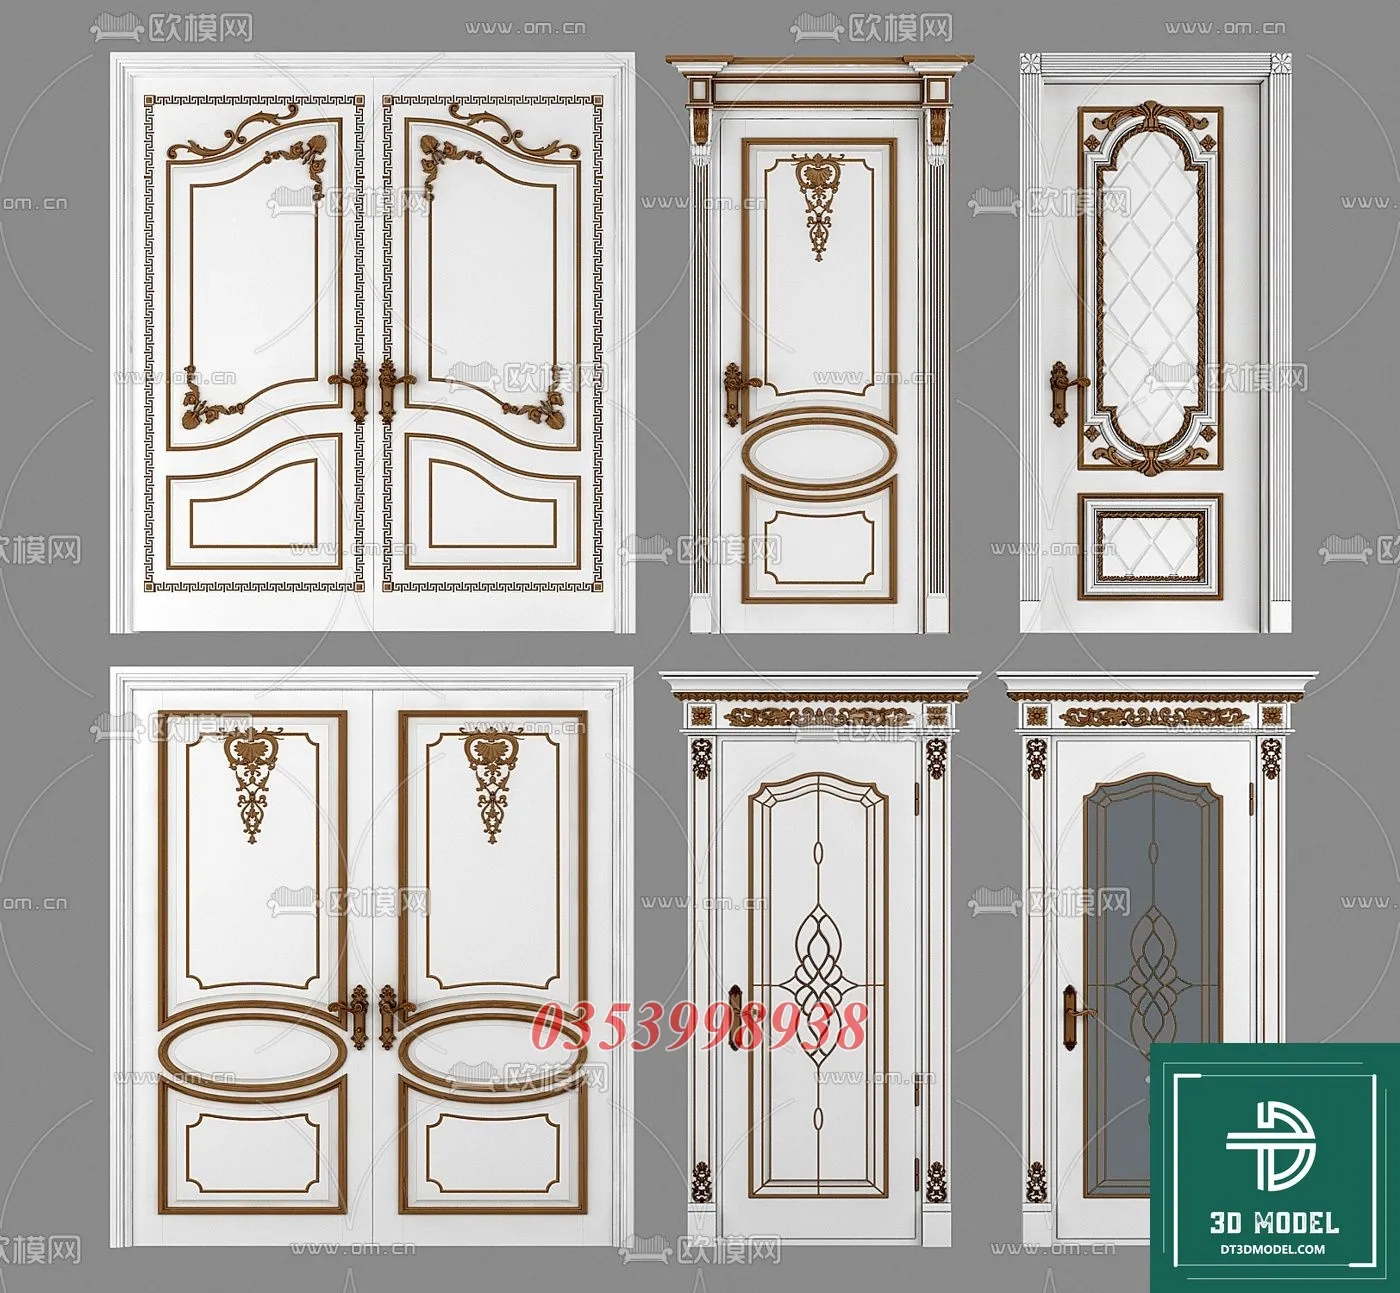 CLASSIC DOOR – 3dsmax MODELS – 019